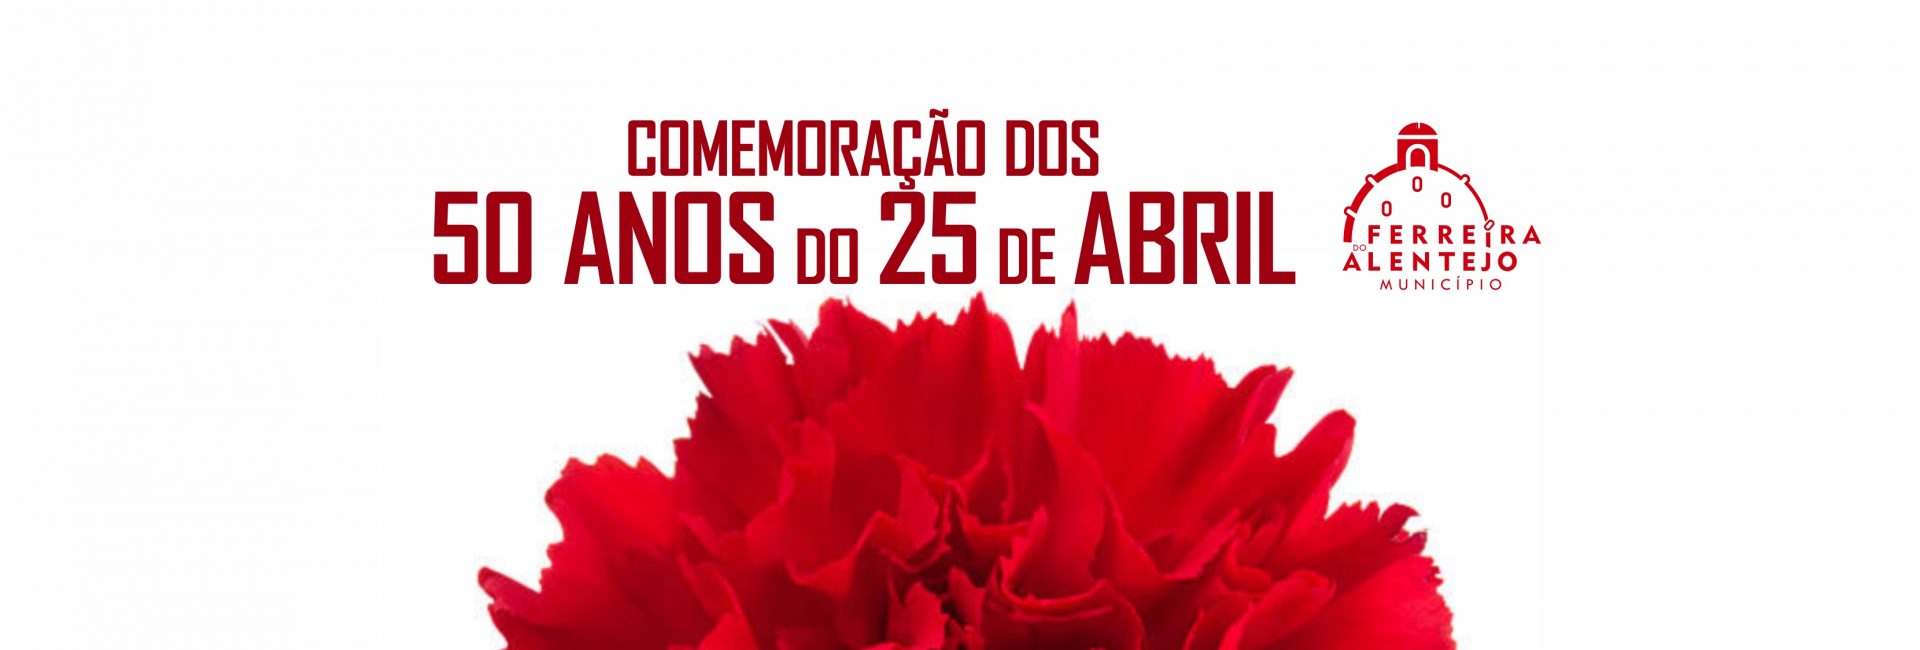 (Português) Comemoração dos 50 anos do 25 de Abril